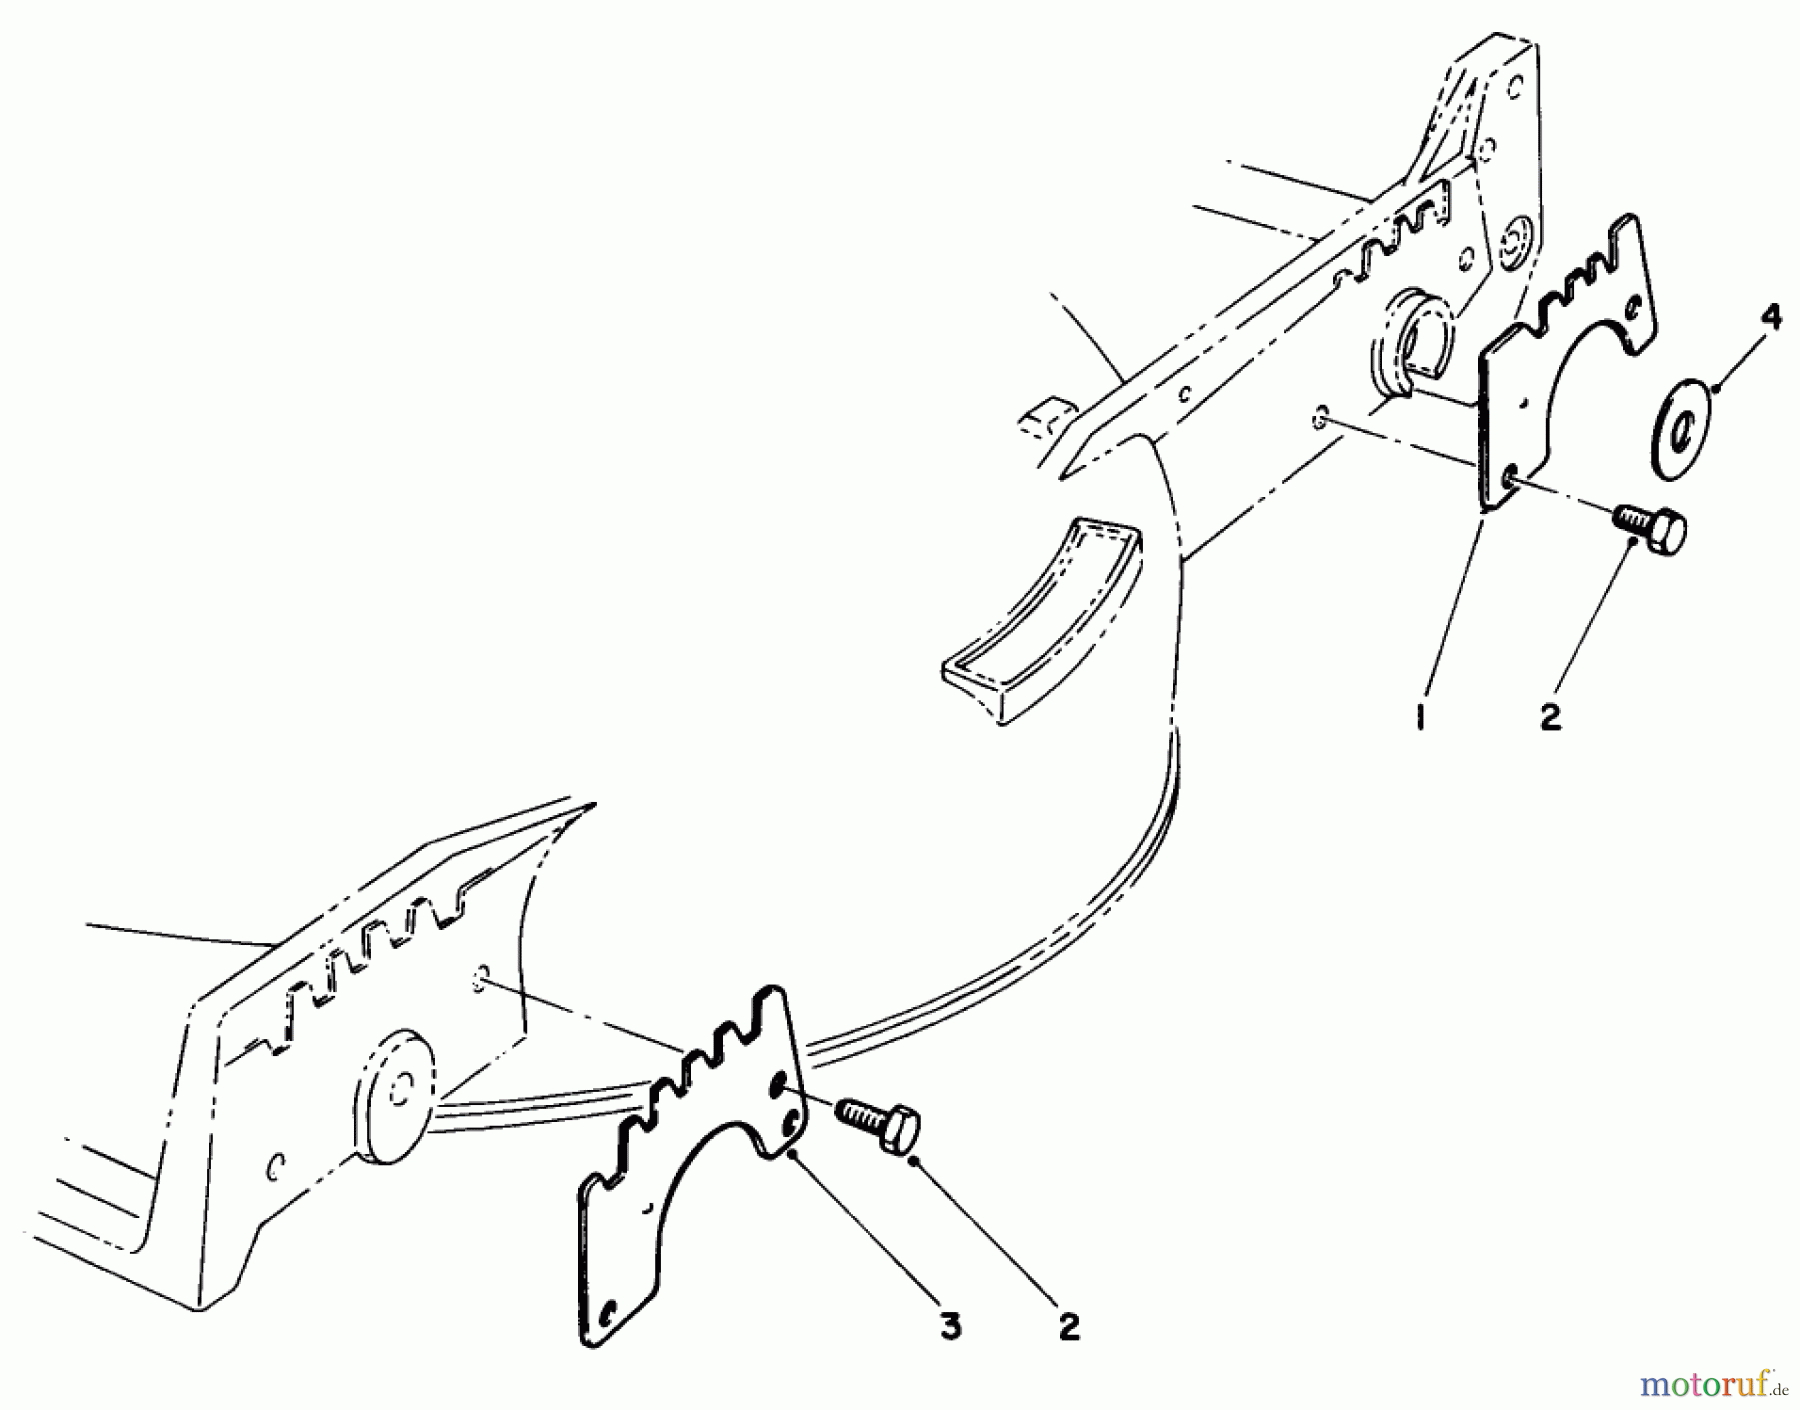  Toro Neu Mowers, Walk-Behind Seite 1 20563 - Toro Lawnmower, 1990 (0000001-0999999) WEAR PLATE MODEL NO. 49-4080 (OPTIONAL)